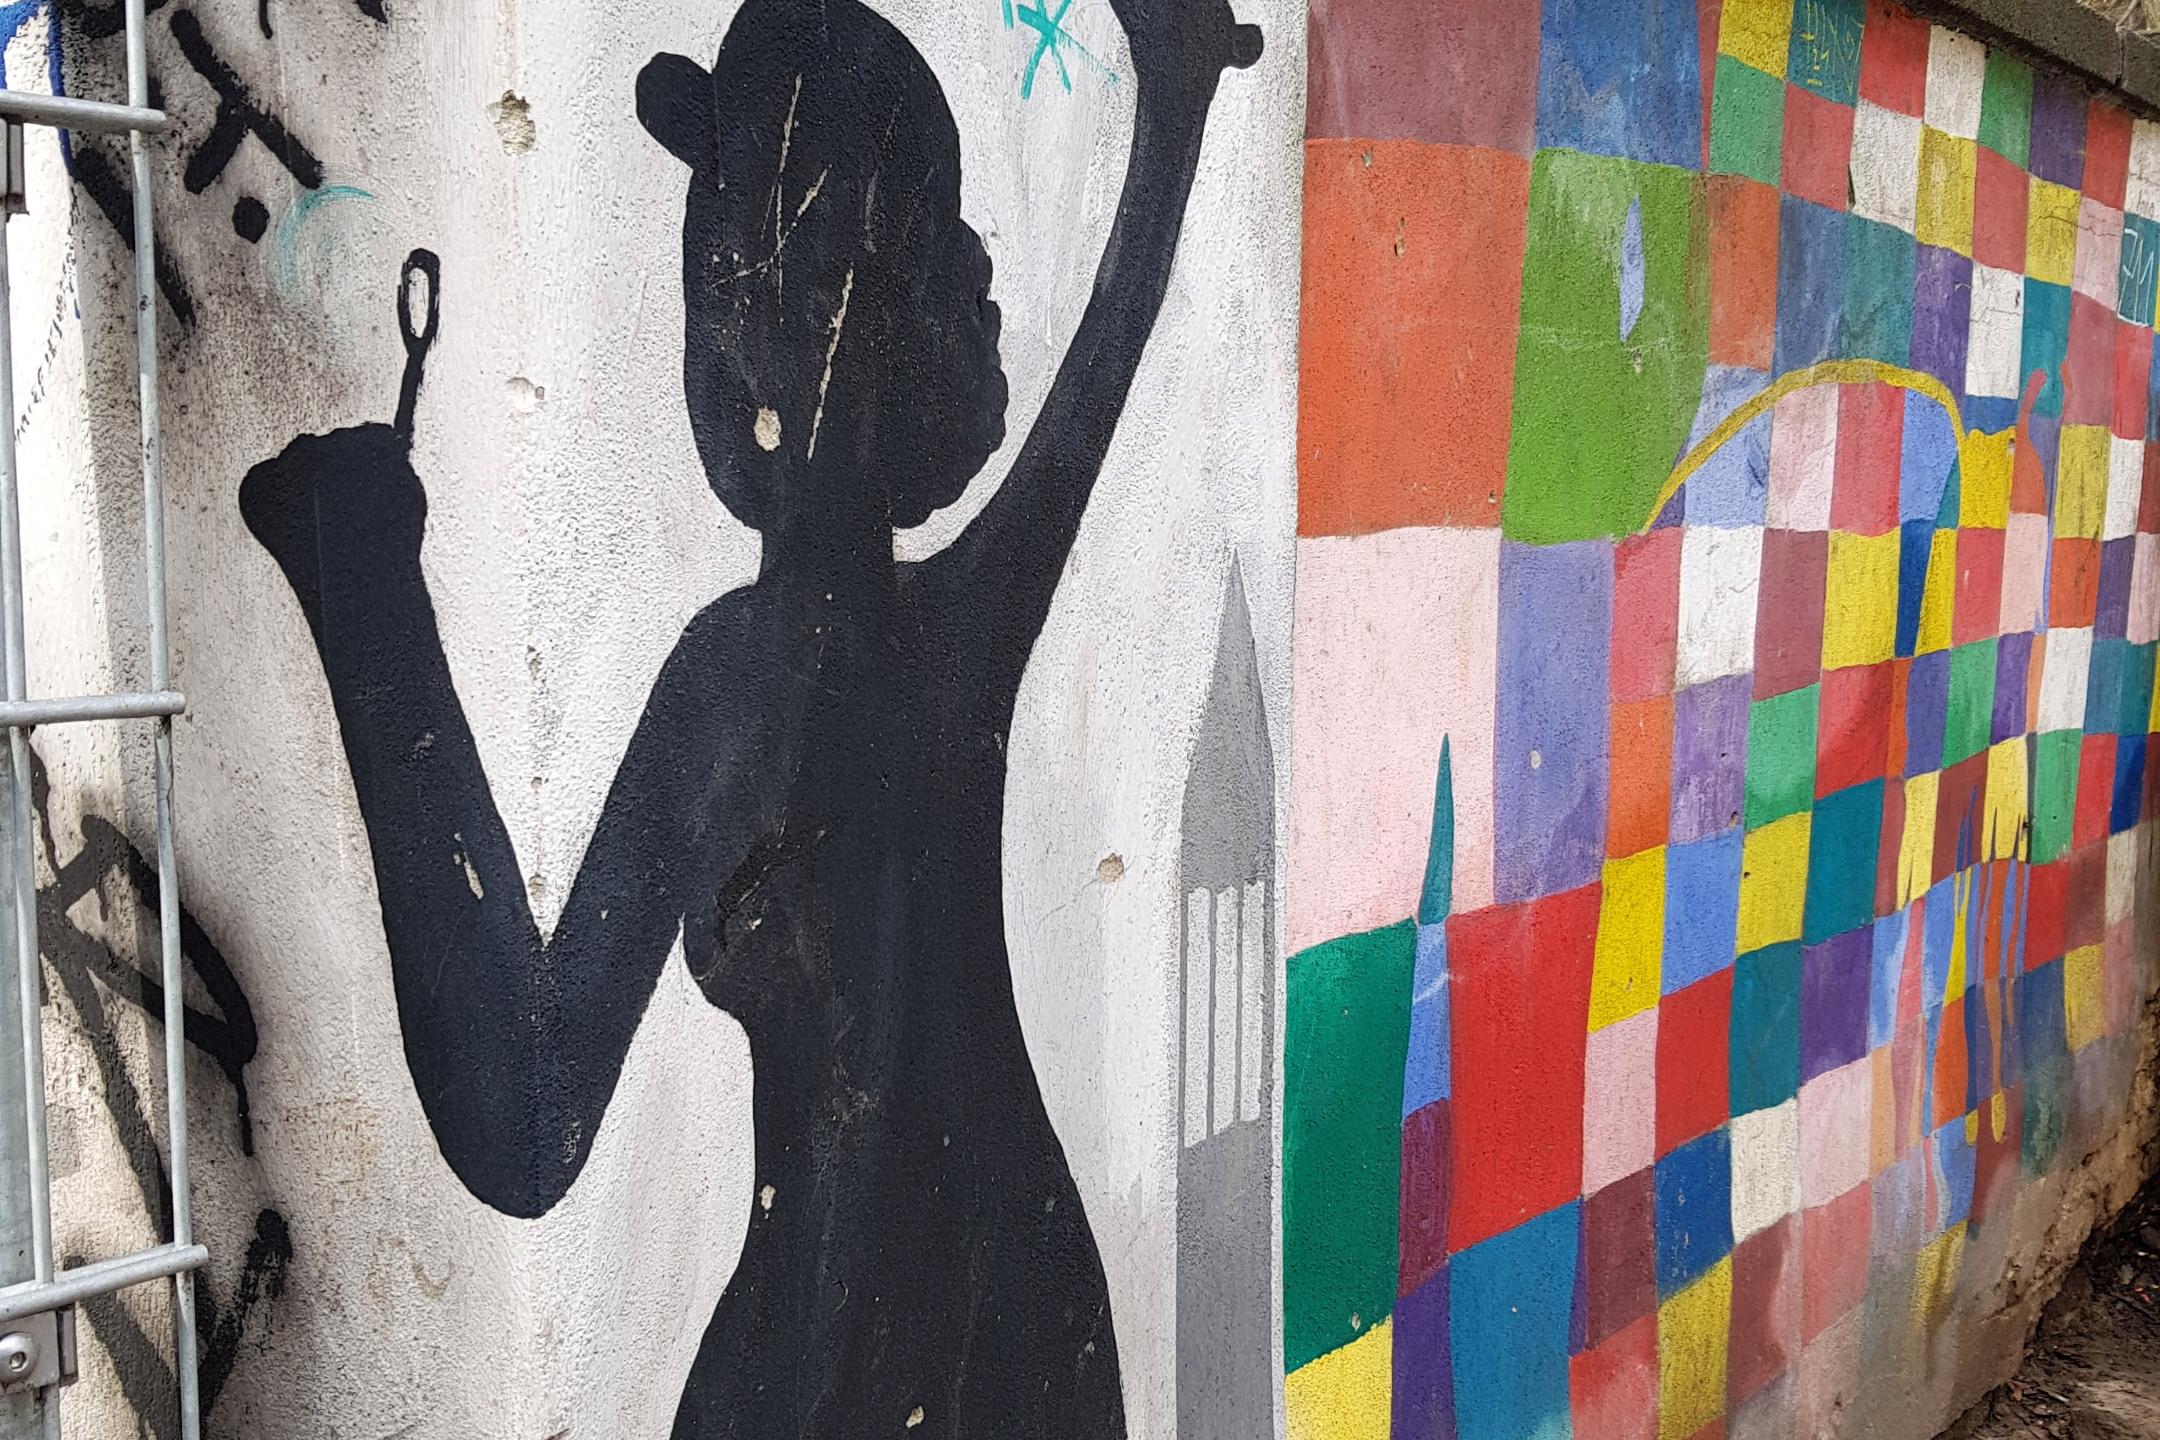 Graffiti an einer Wand. Man sieht den Schatten einer Frau mit Regenschirm. Ebenso viele bunte Kacheln